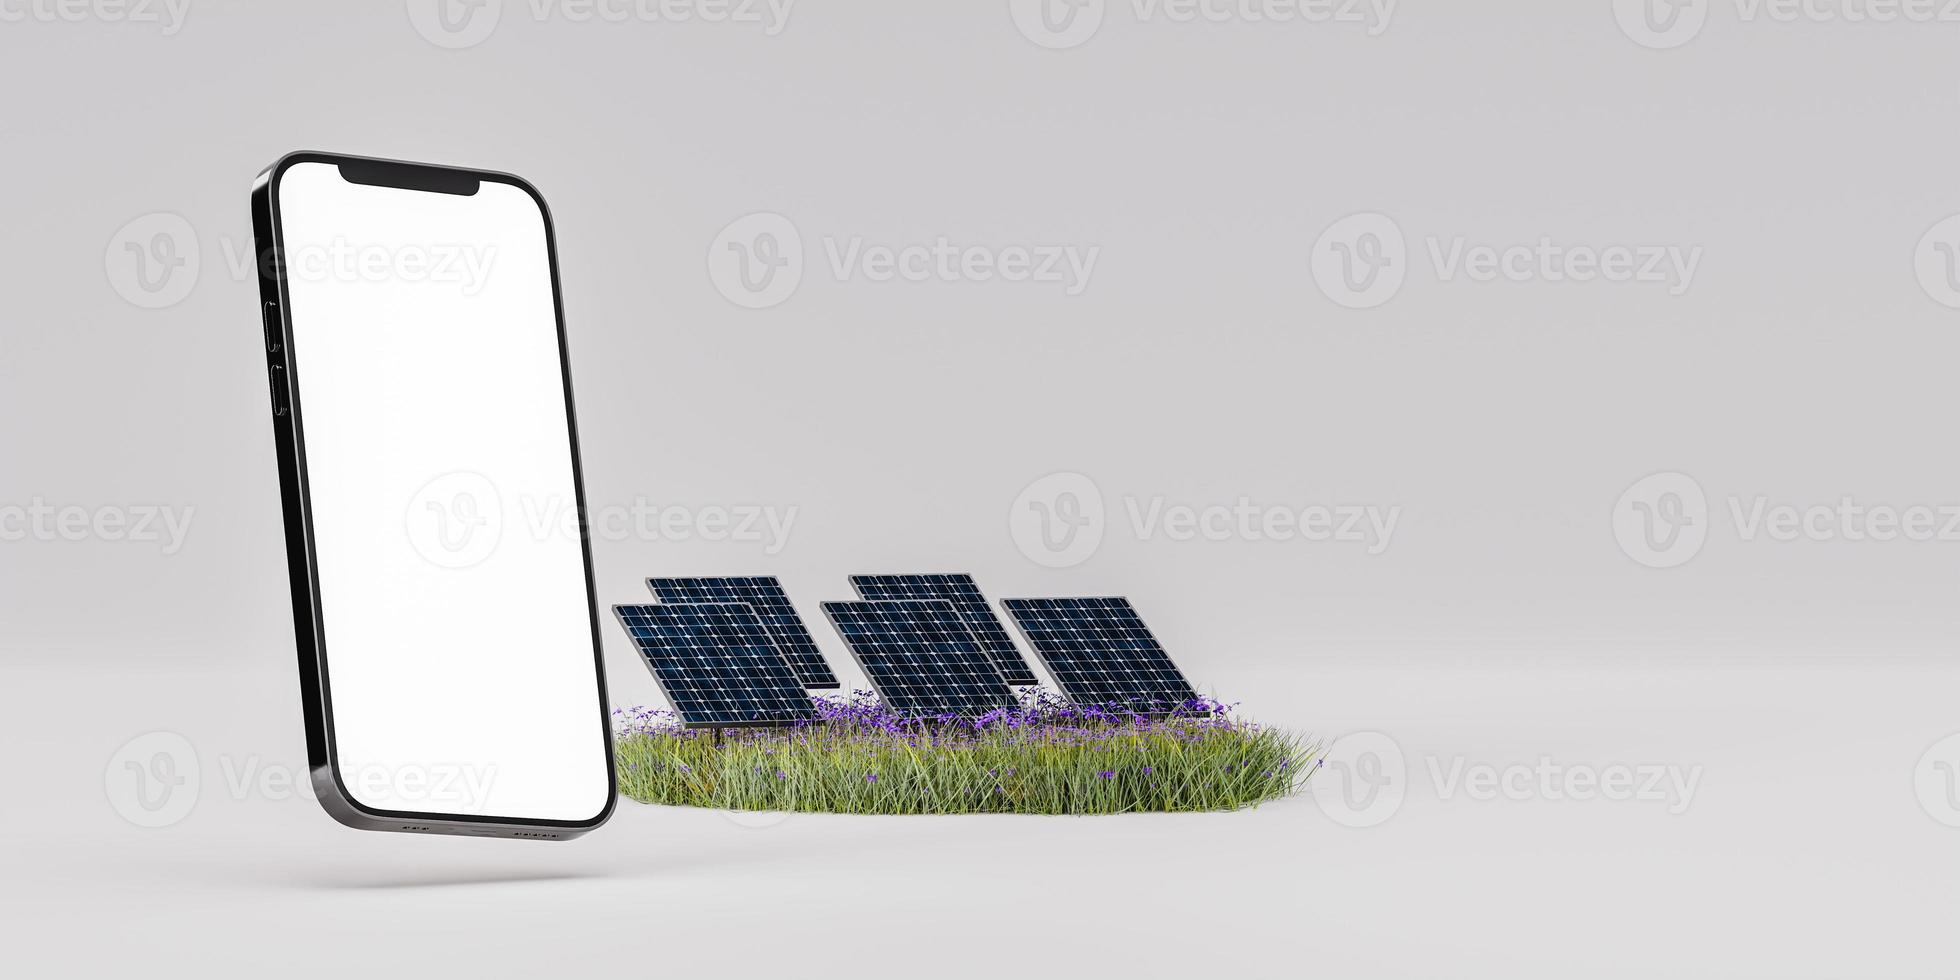 modern smart telefon falsk upp nära sol- paneler foto